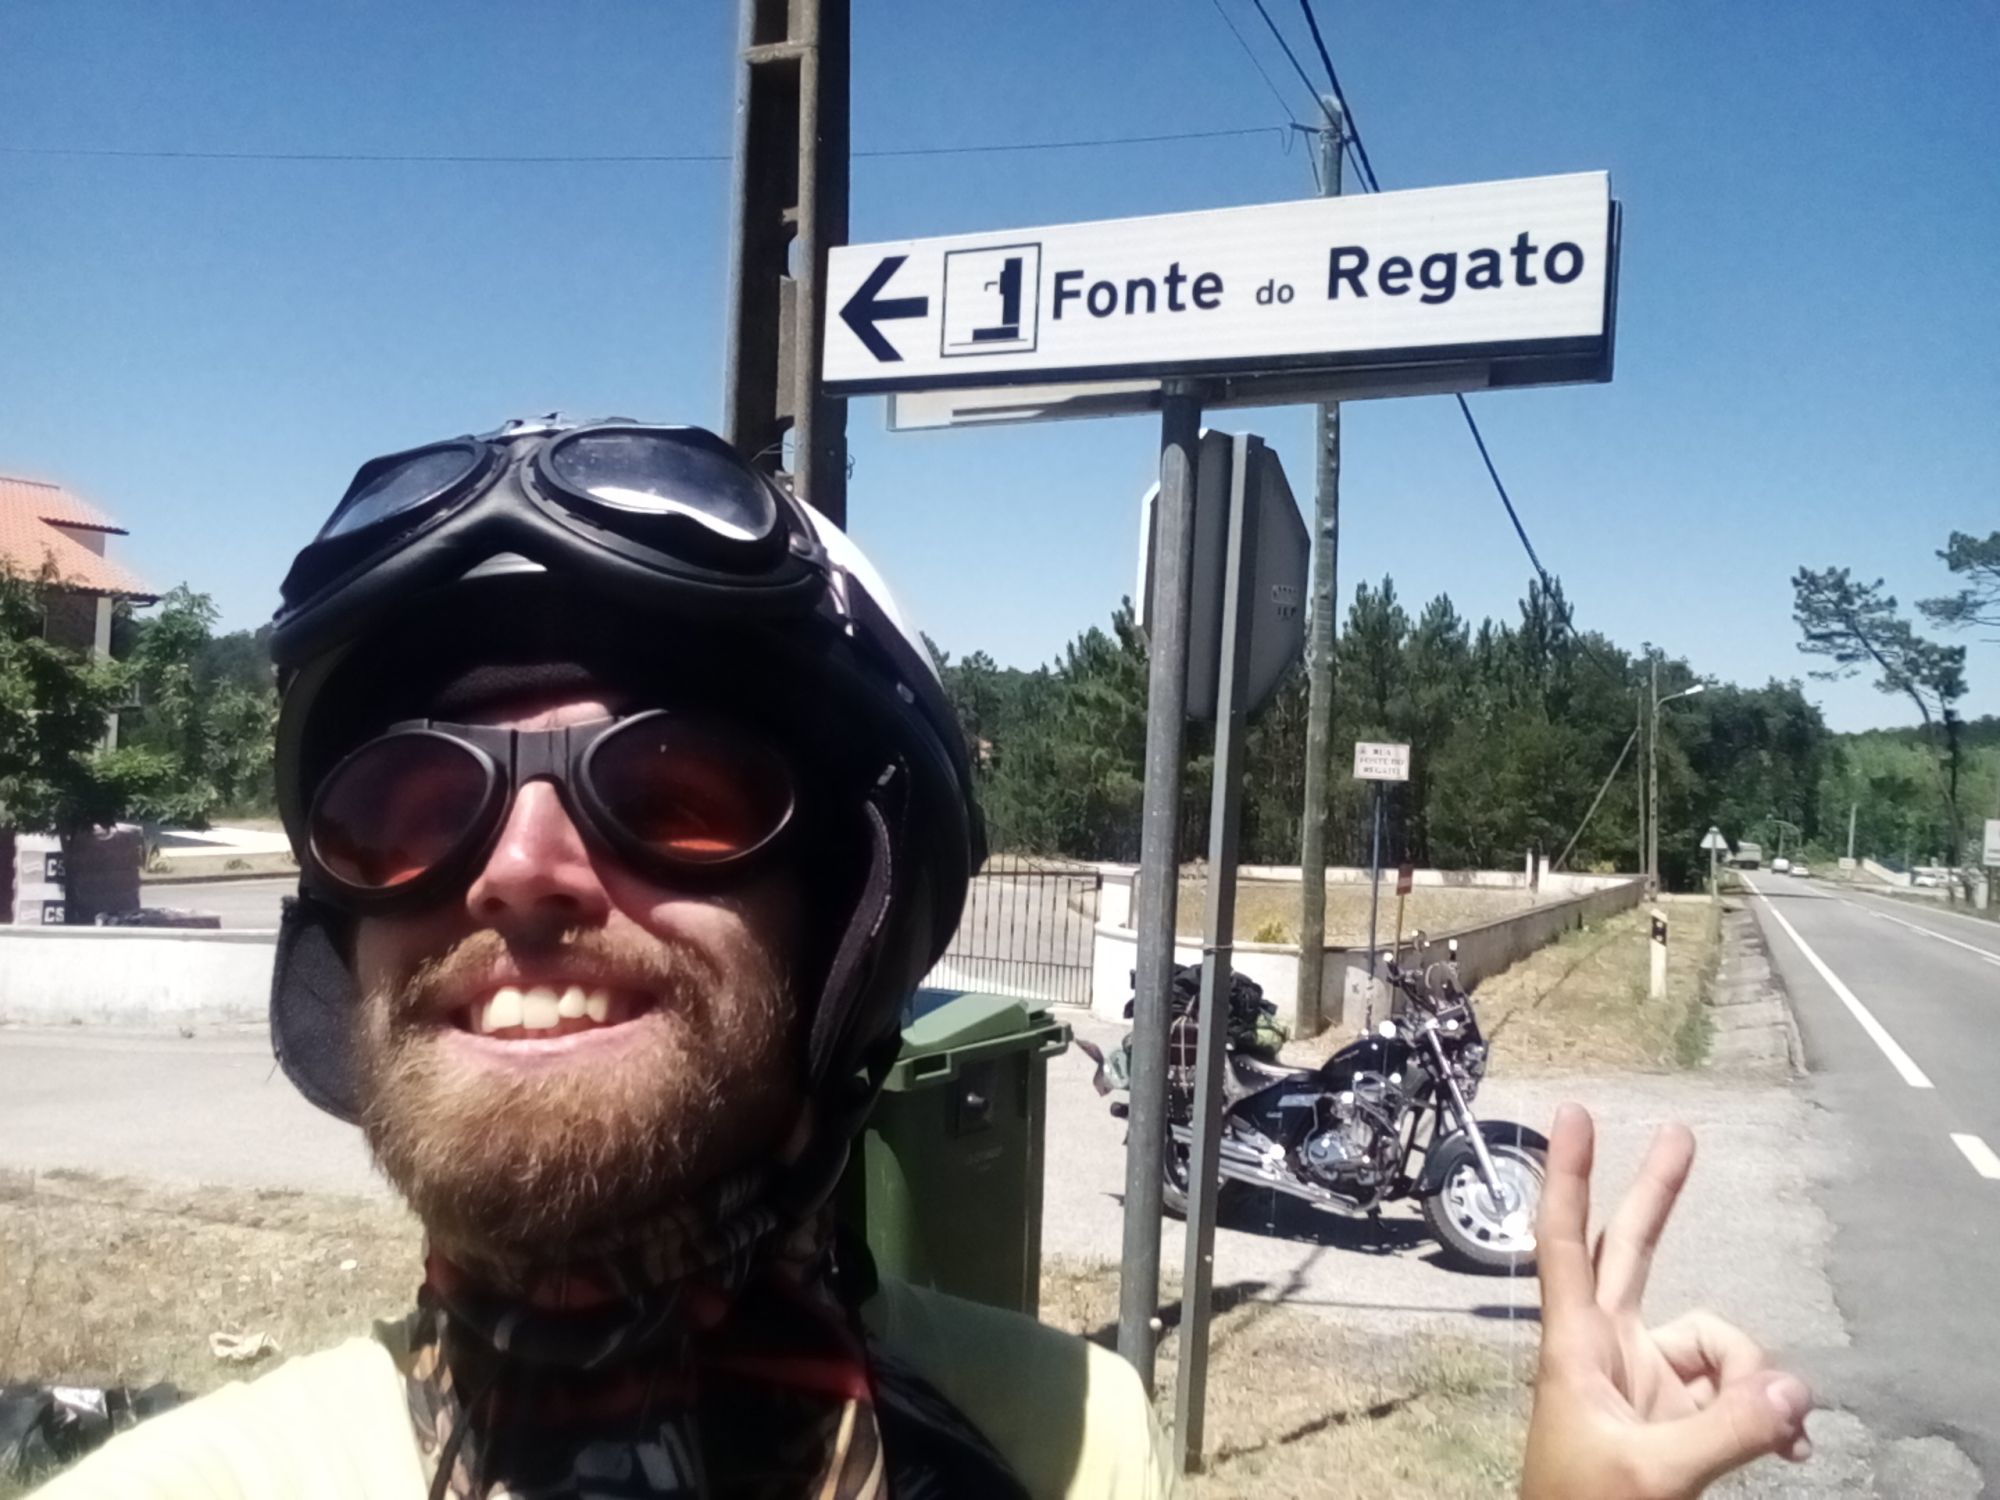 odbočka na Fonte do Regato